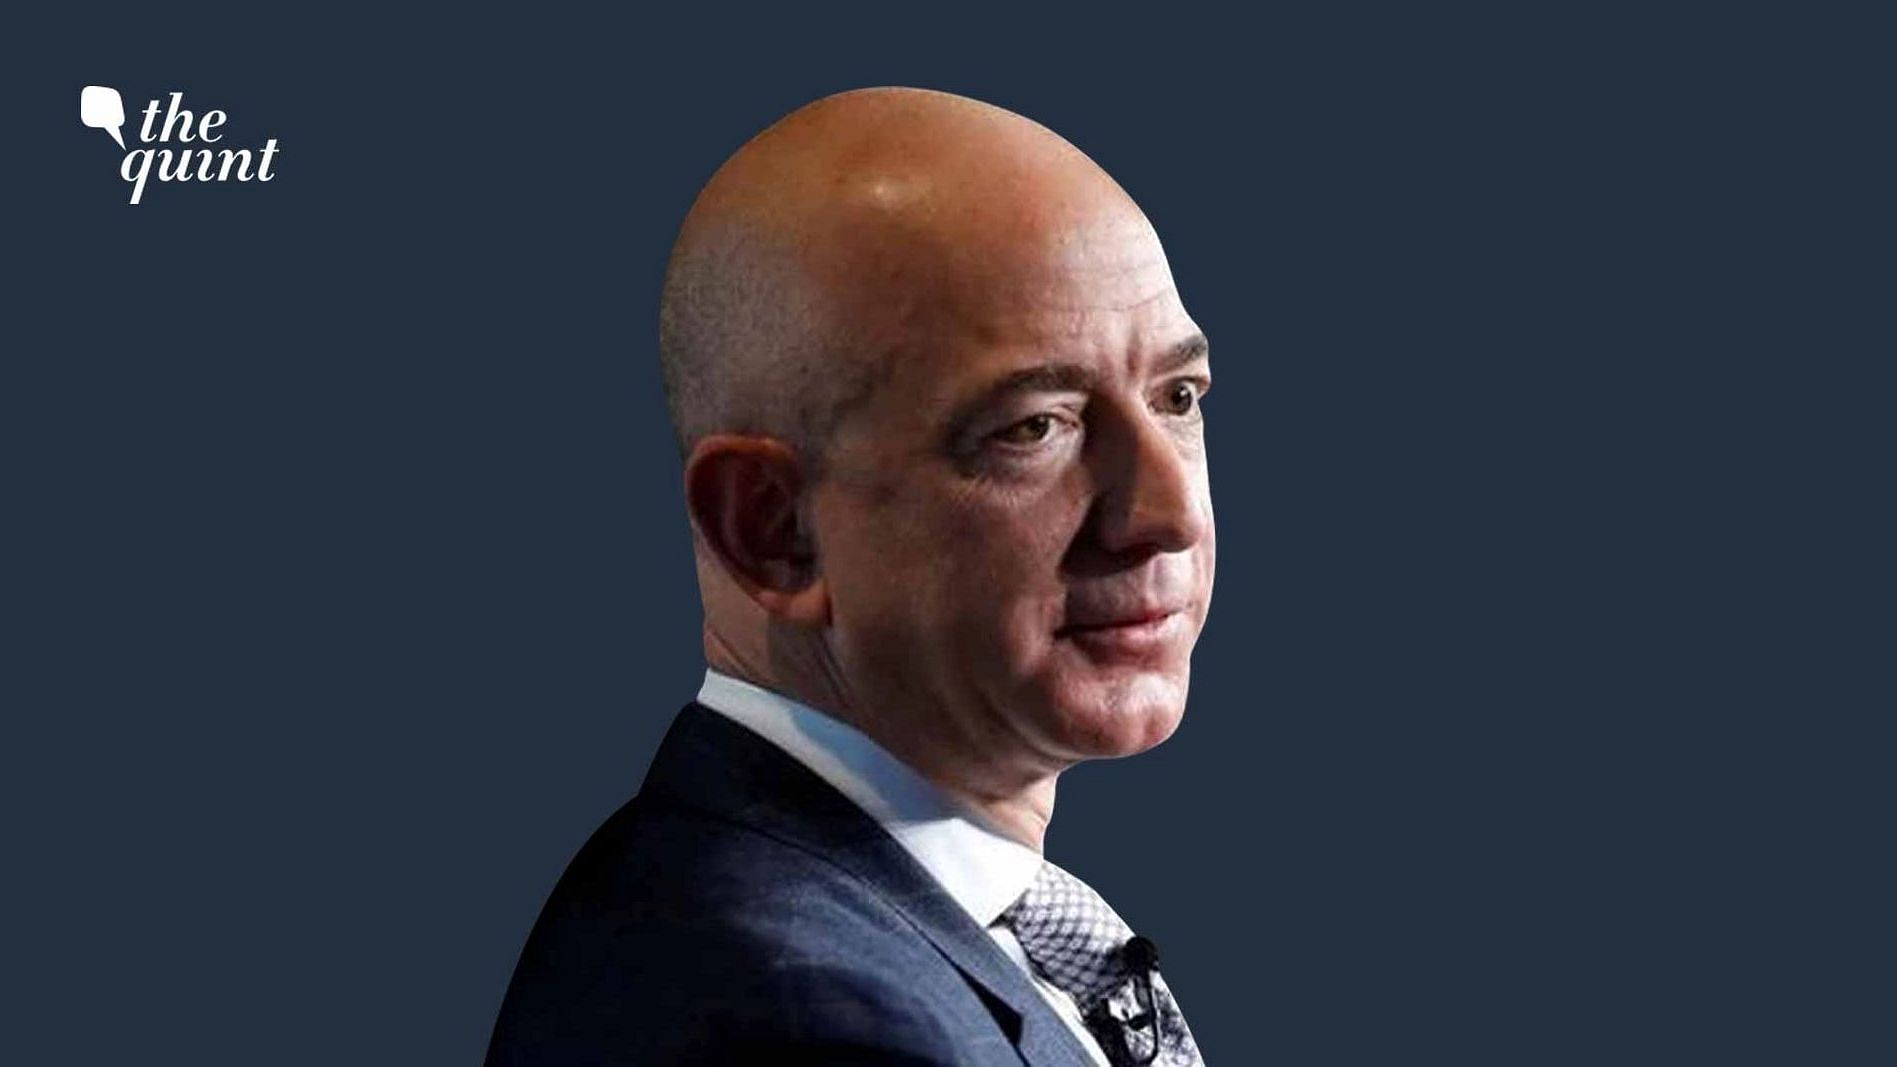 <div class="paragraphs"><p>Jeff Bezos, CEO, Amazon.</p></div>